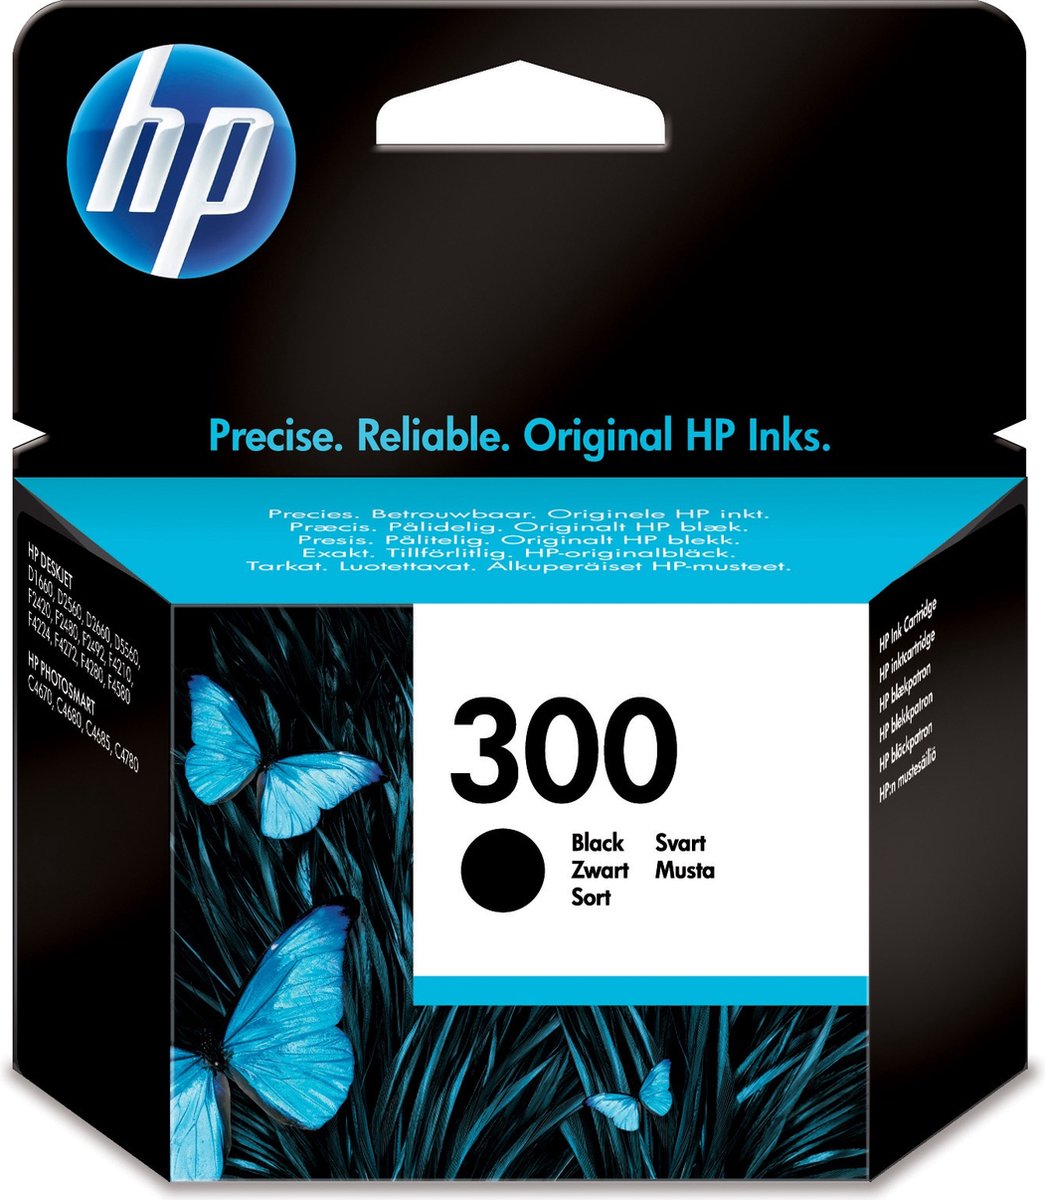 Cartouche HP 300 XL noir pour imprimantes jet d'encre - Cartouches